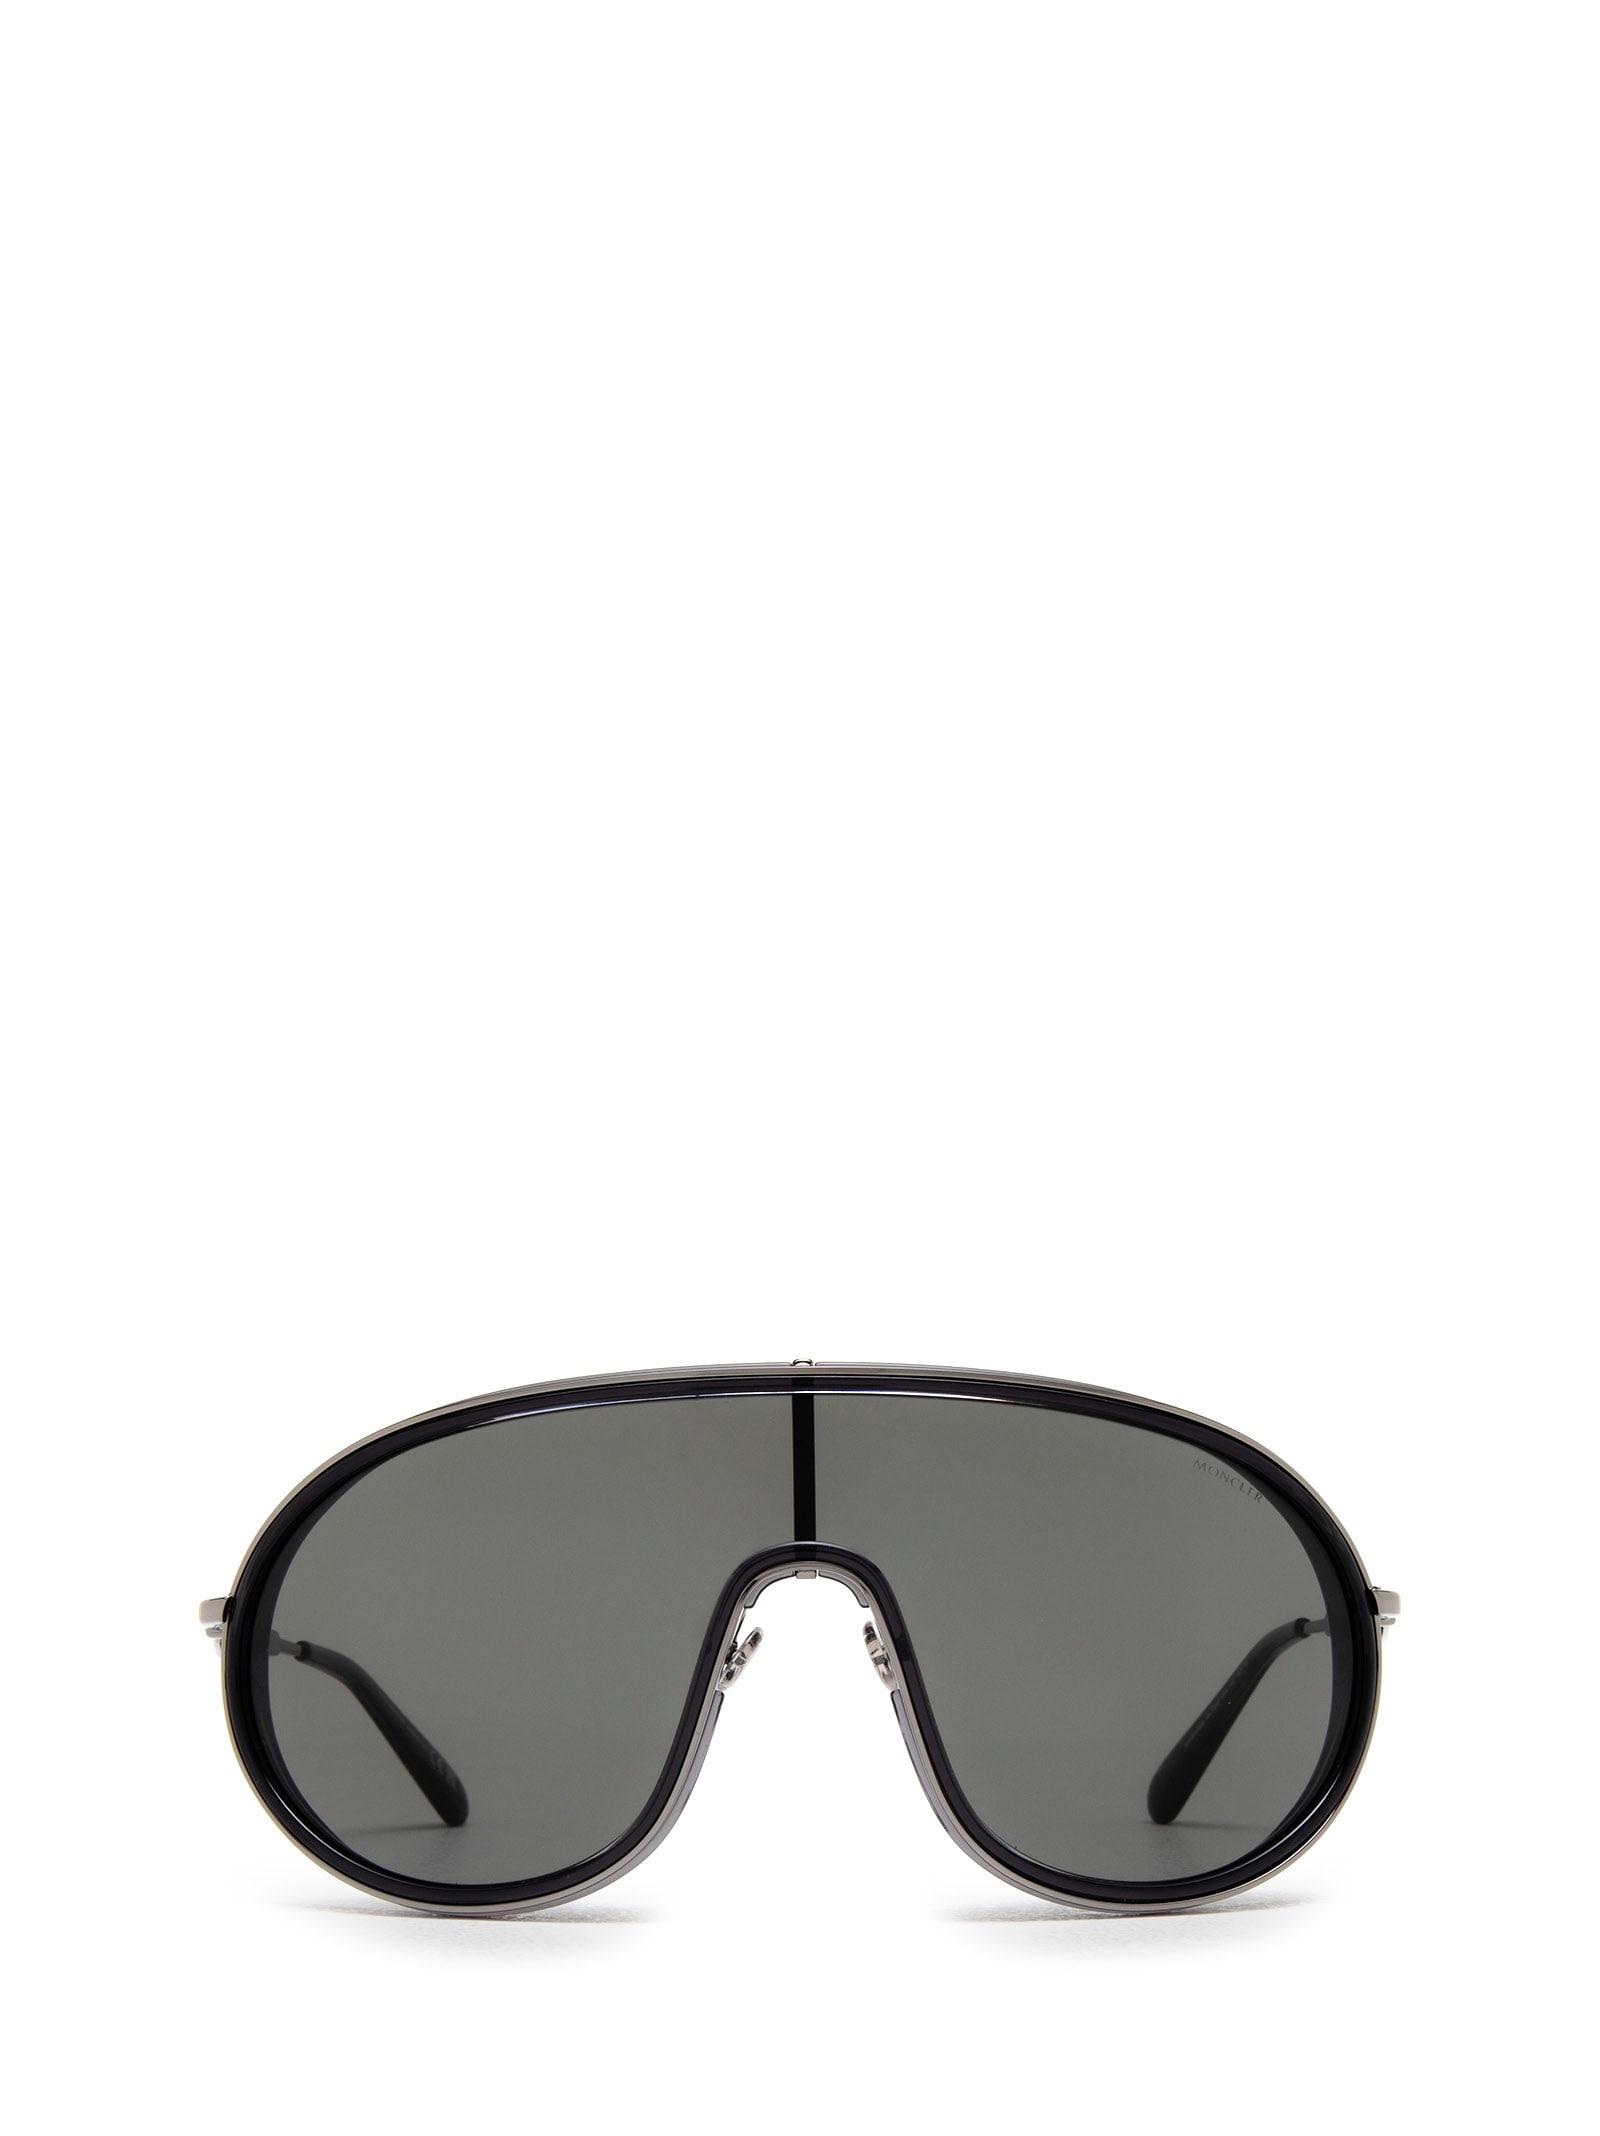 Moncler Ml0222 Shiny Black Sunglasses